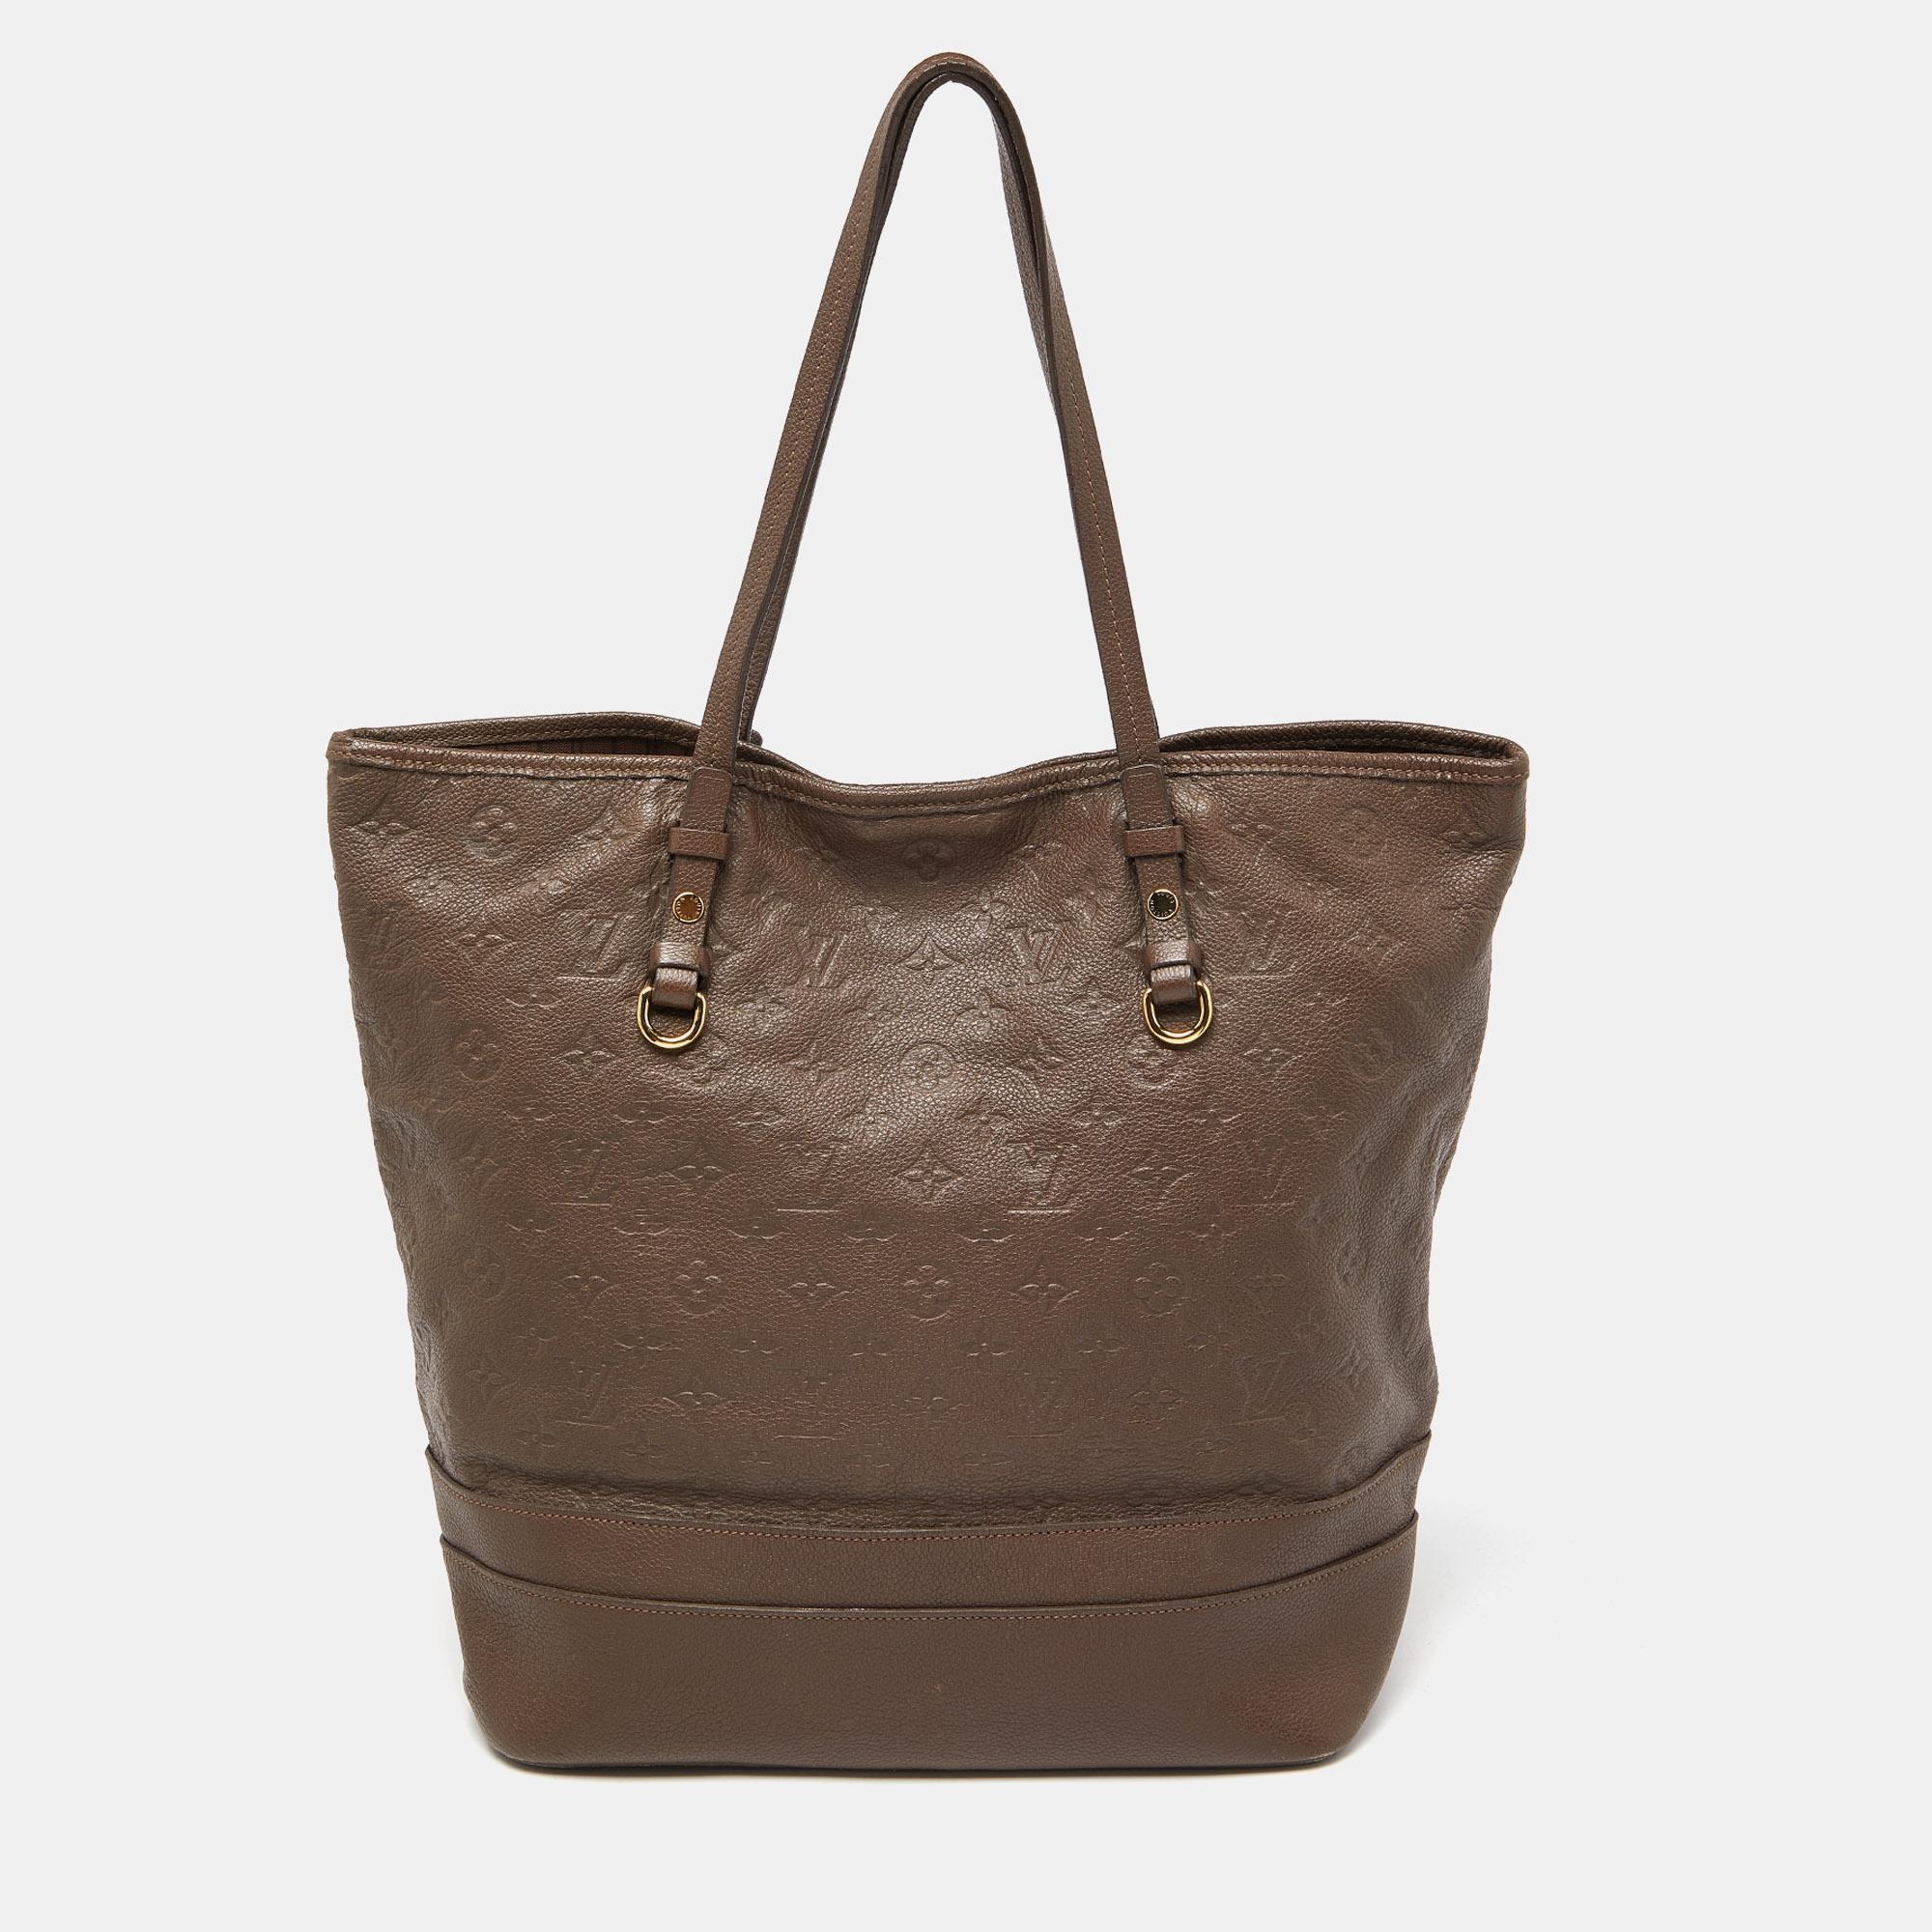 Les créations de Louis Vuitton sont populaires en raison de leur style élevé et de leur fonctionnalité. Ce sac, comme tous les autres sacs à main, est durable et élégant. D'une finition soignée, le sac est conçu pour offrir une expérience luxueuse.